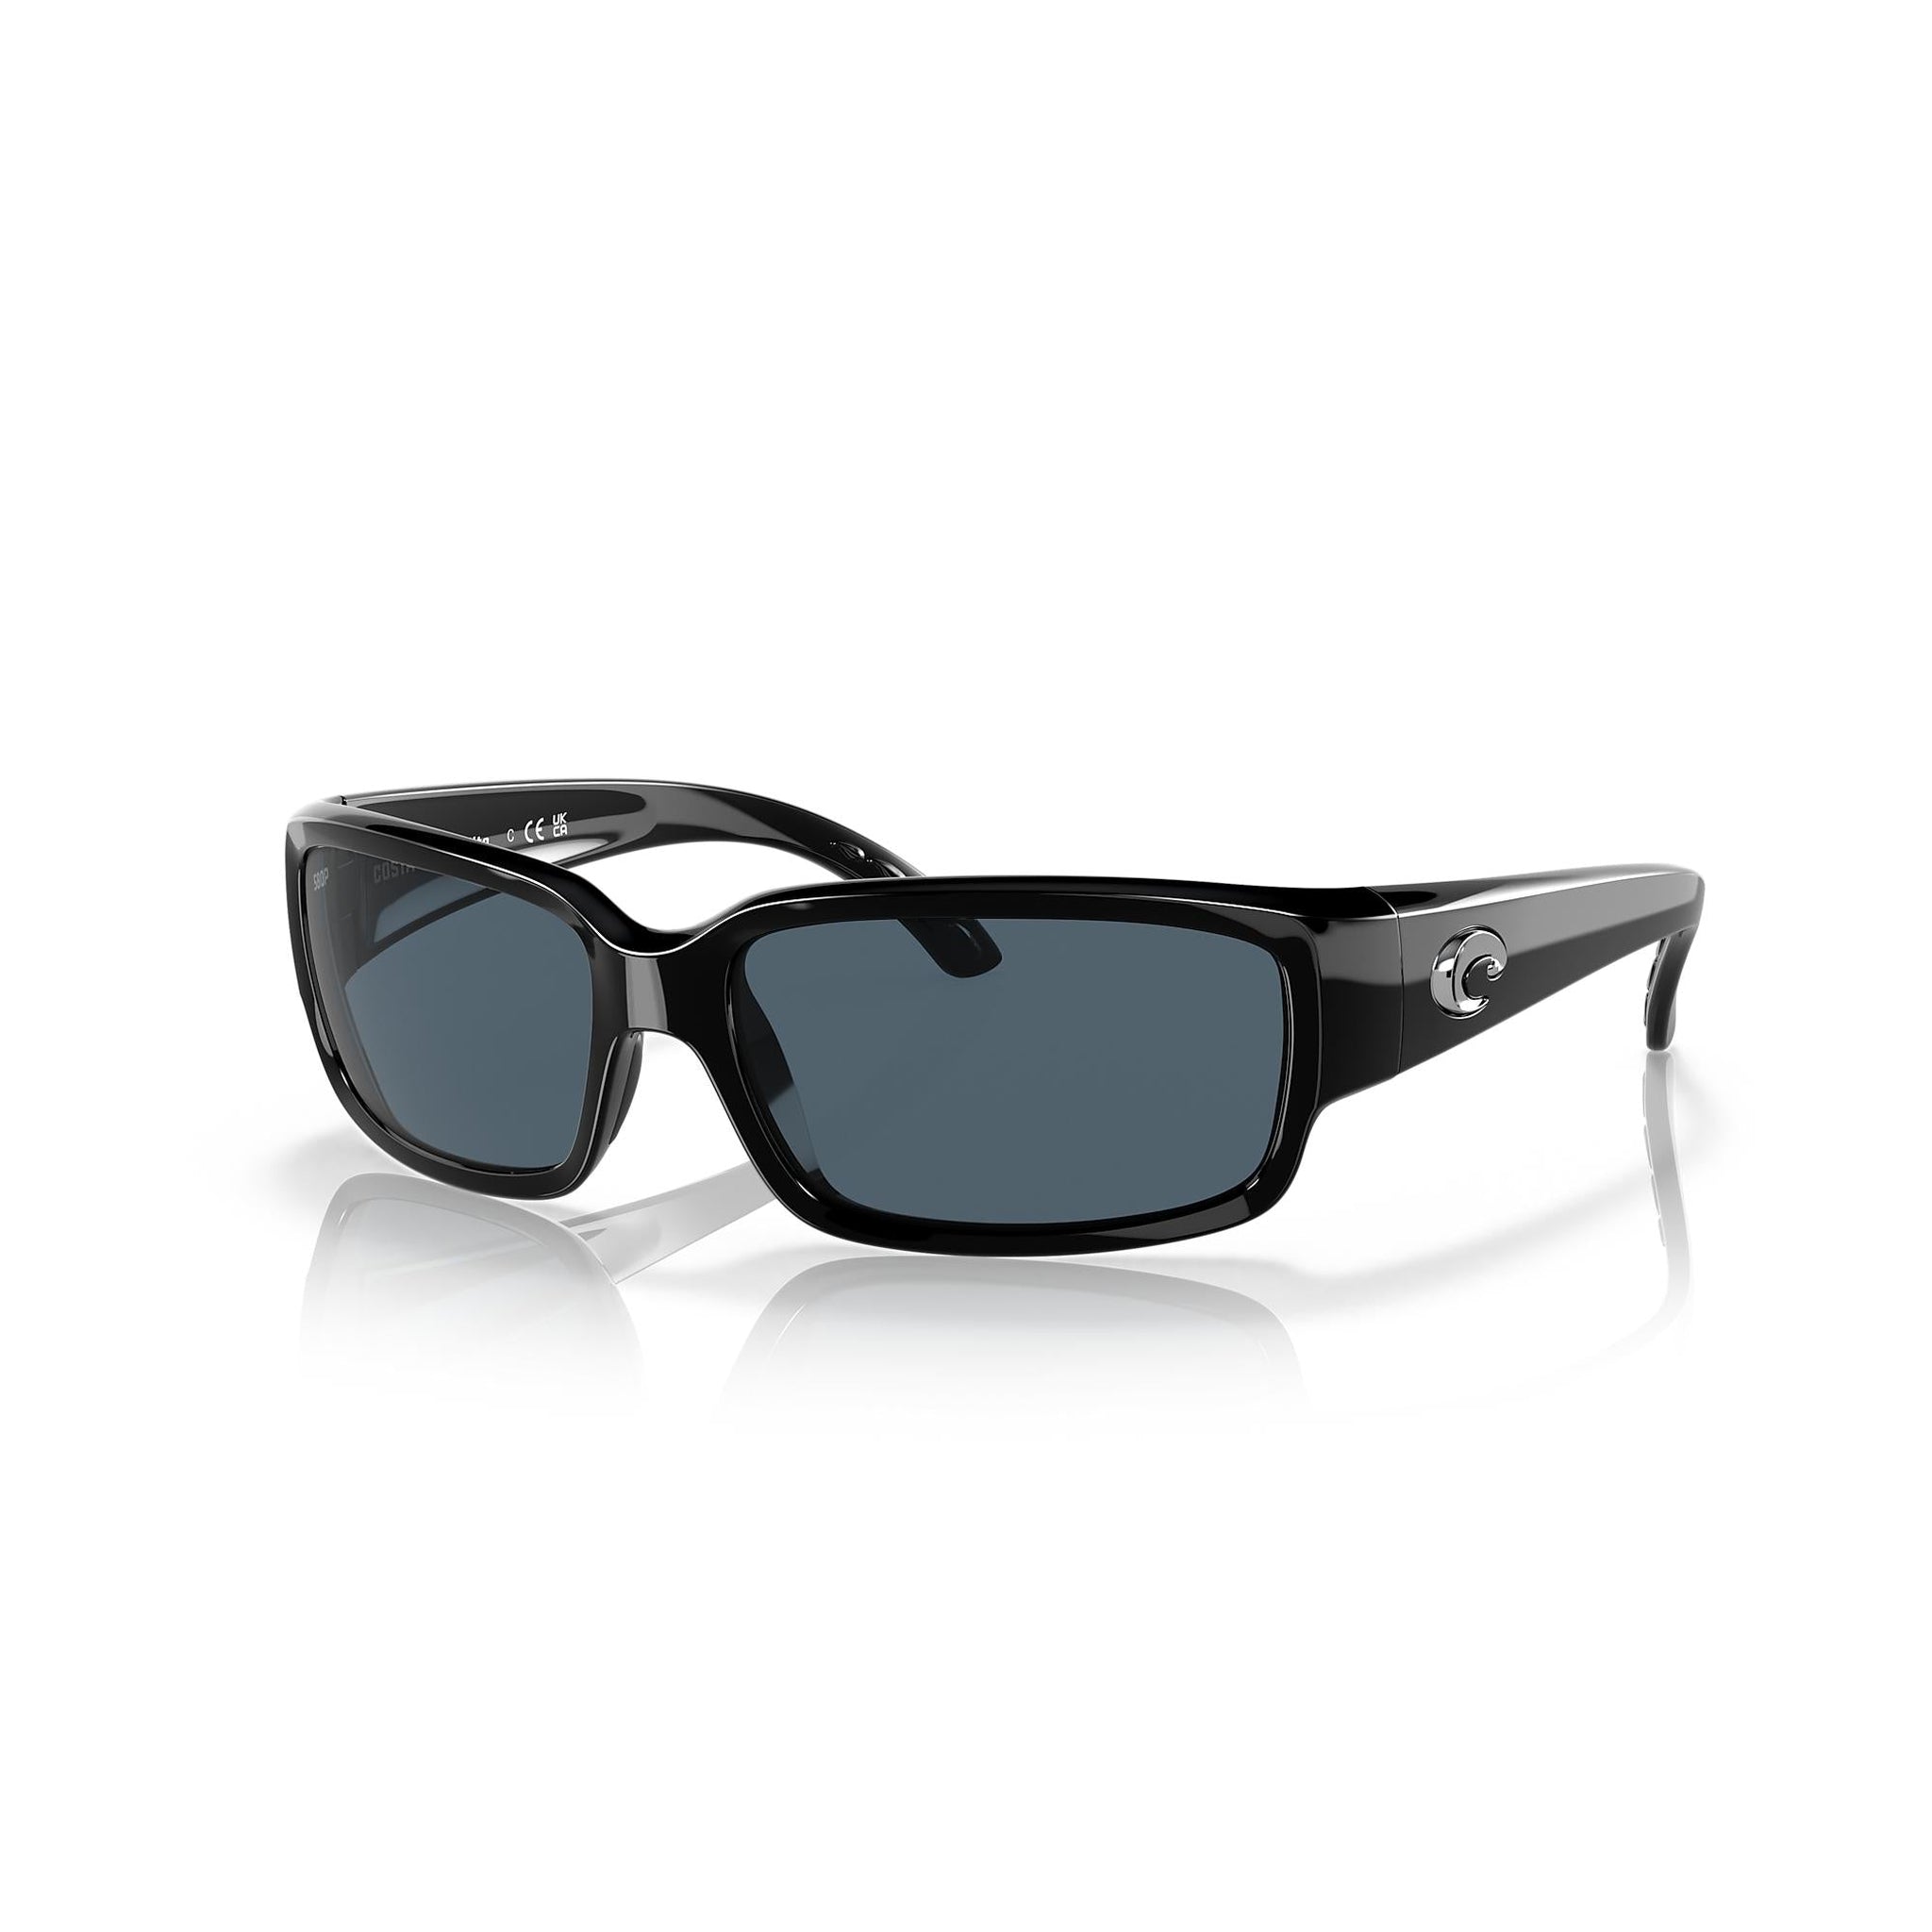 Costa Del Mar Caballito Sunglasses Black / Gray